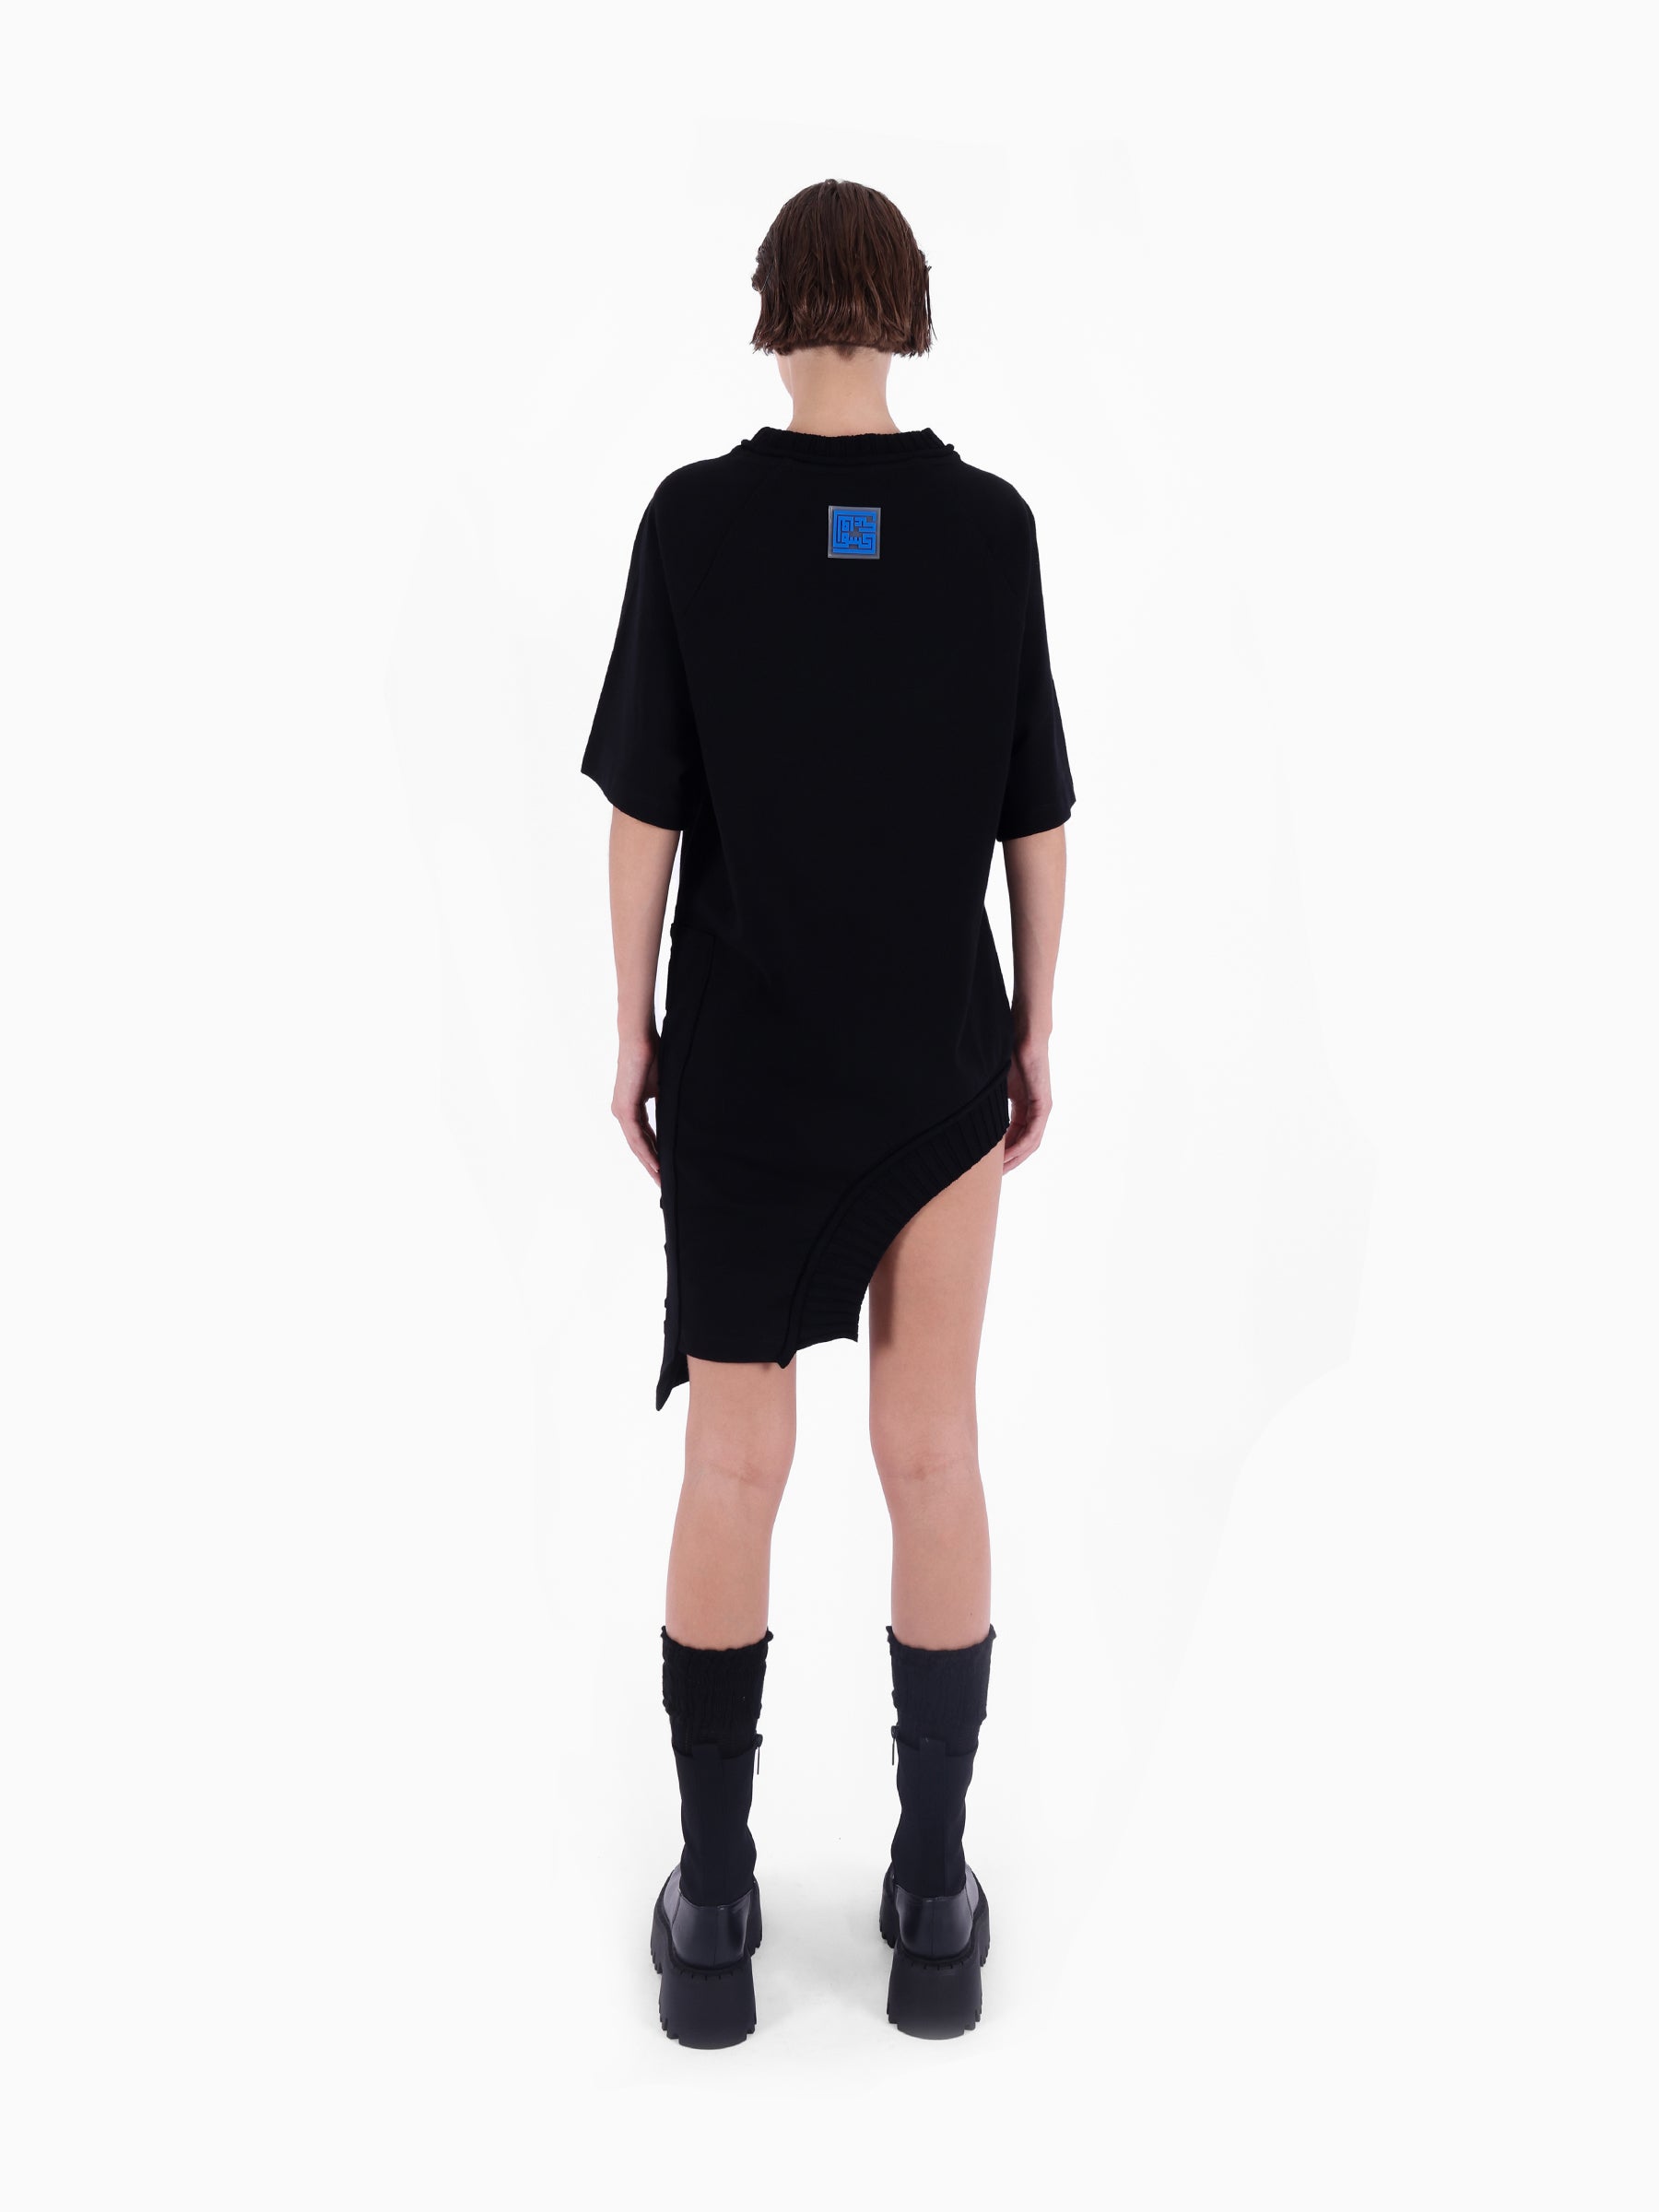 Reglan Kollu, Yakası Fitilli ve Etekli, Kenarları "KNTLGY" Fırfırlı Baskılı Siyah Asimetrik Tişört Elbise